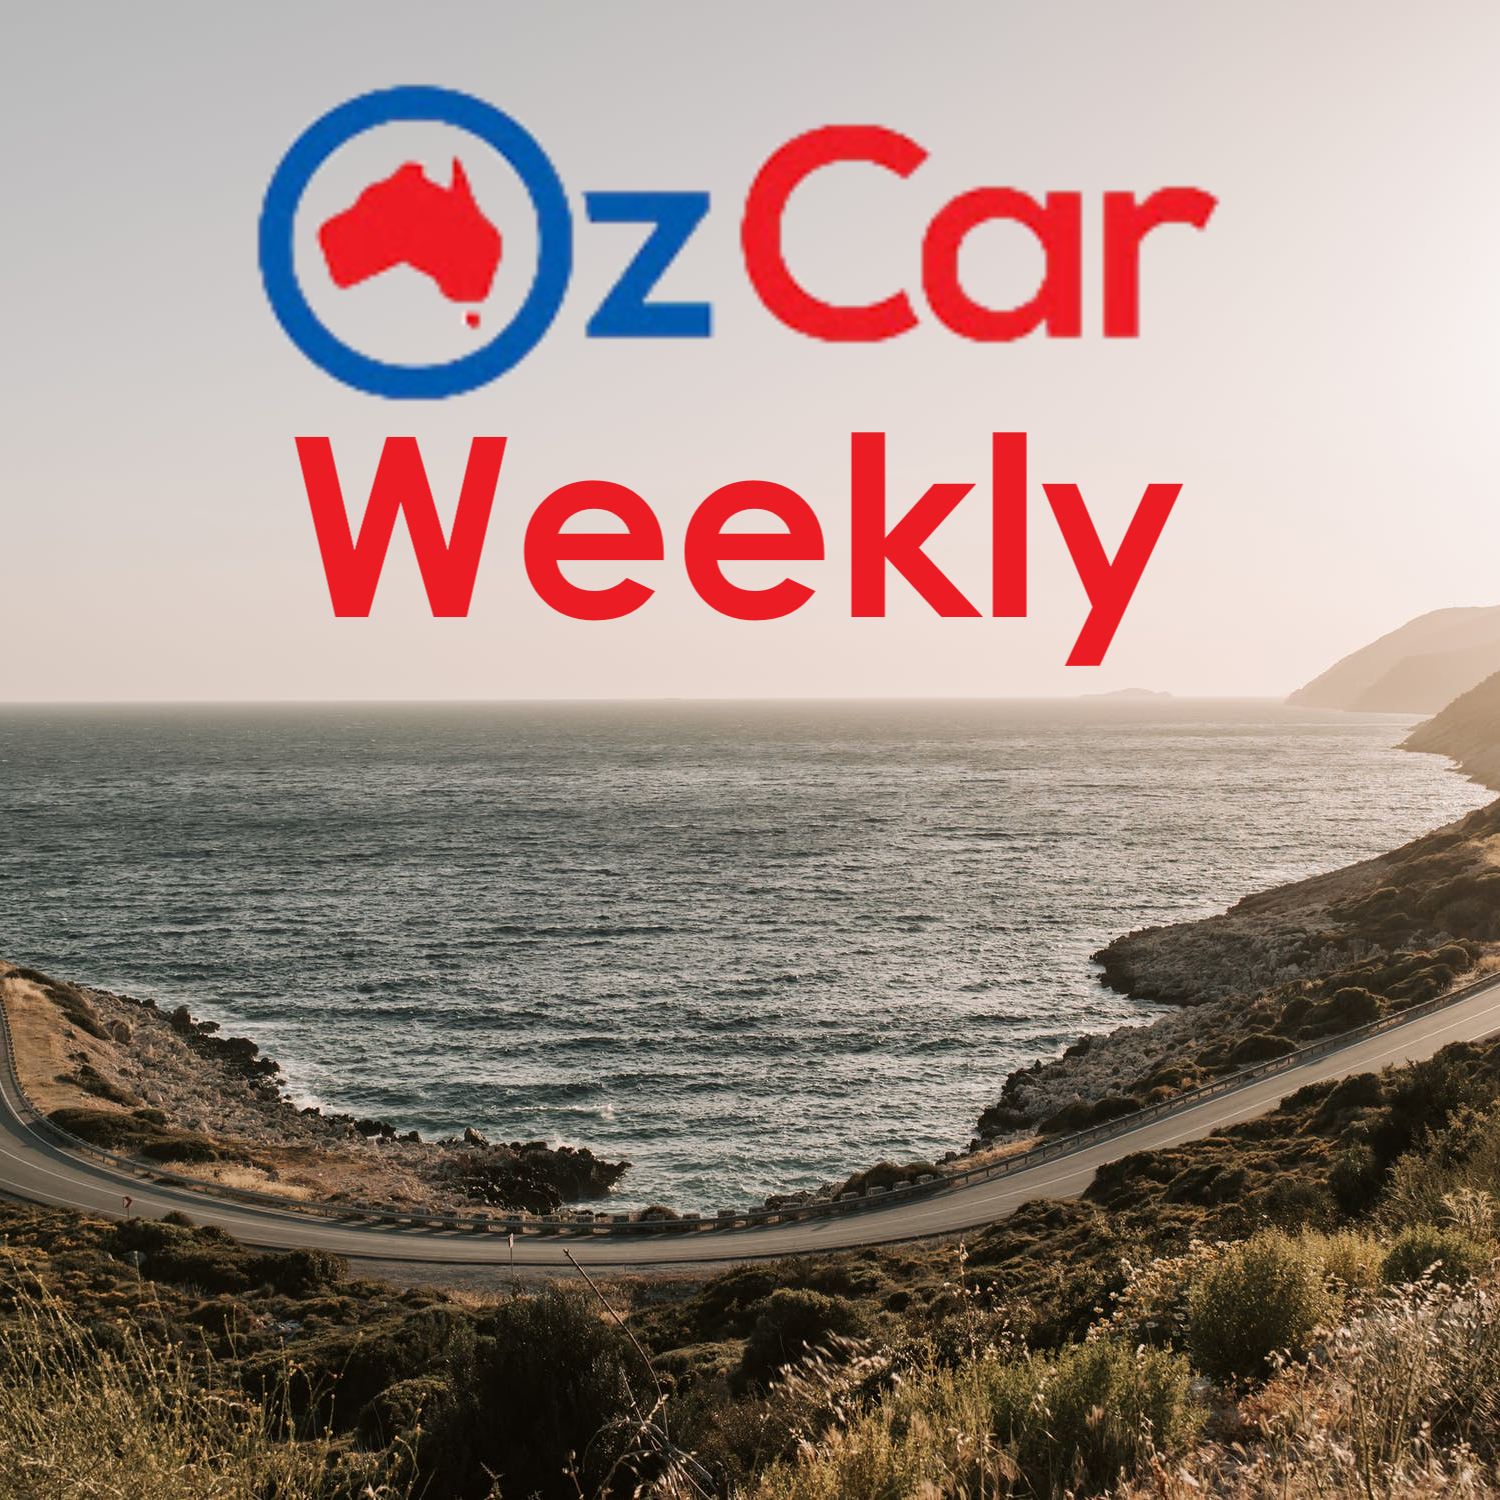 OzCar Weekly Episode 16